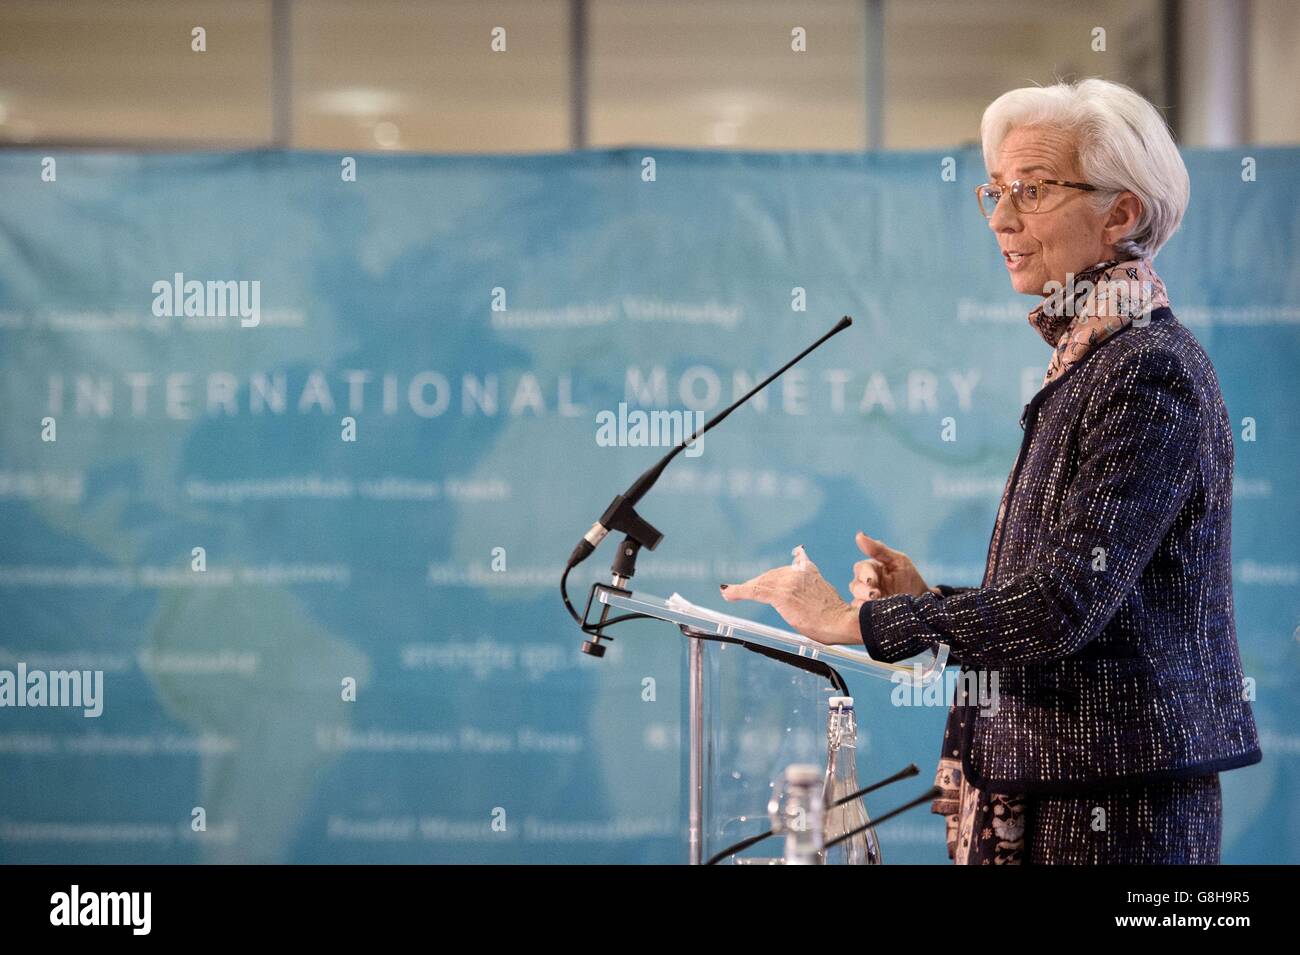 La Directora Gerente del Fondo Monetario Internacional Christine Lagarde habla en una conferencia de prensa en el Tesoro de Londres, a la que asistió el Canciller del Hacienda George Osborne, donde presentó la declaración final de la consulta del Artículo IV del FMI 2015 con el Ministerio de Hacienda británico. Foto de stock